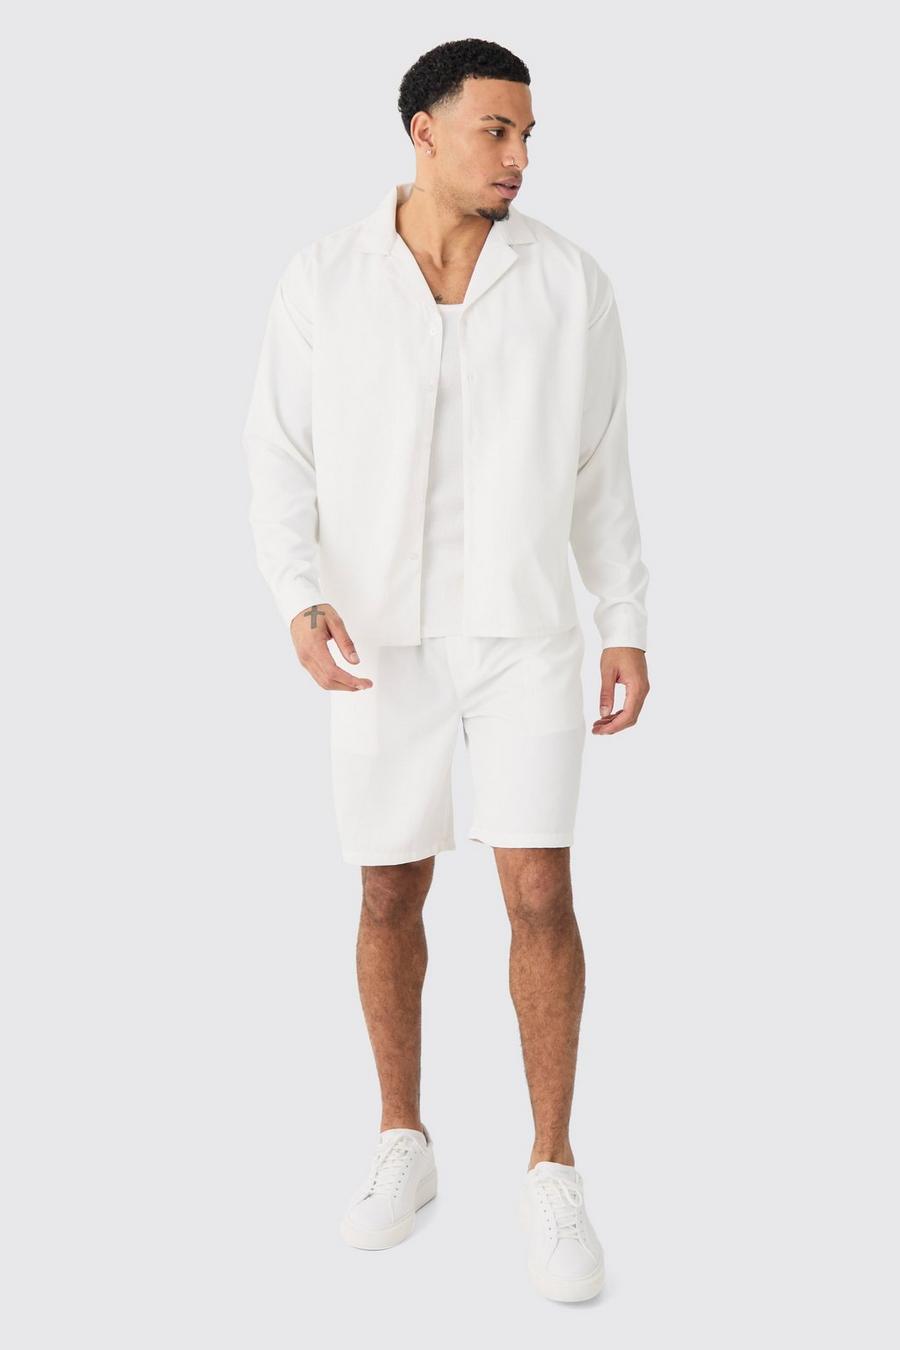 Kastiges Twill Hemd und Shorts, White